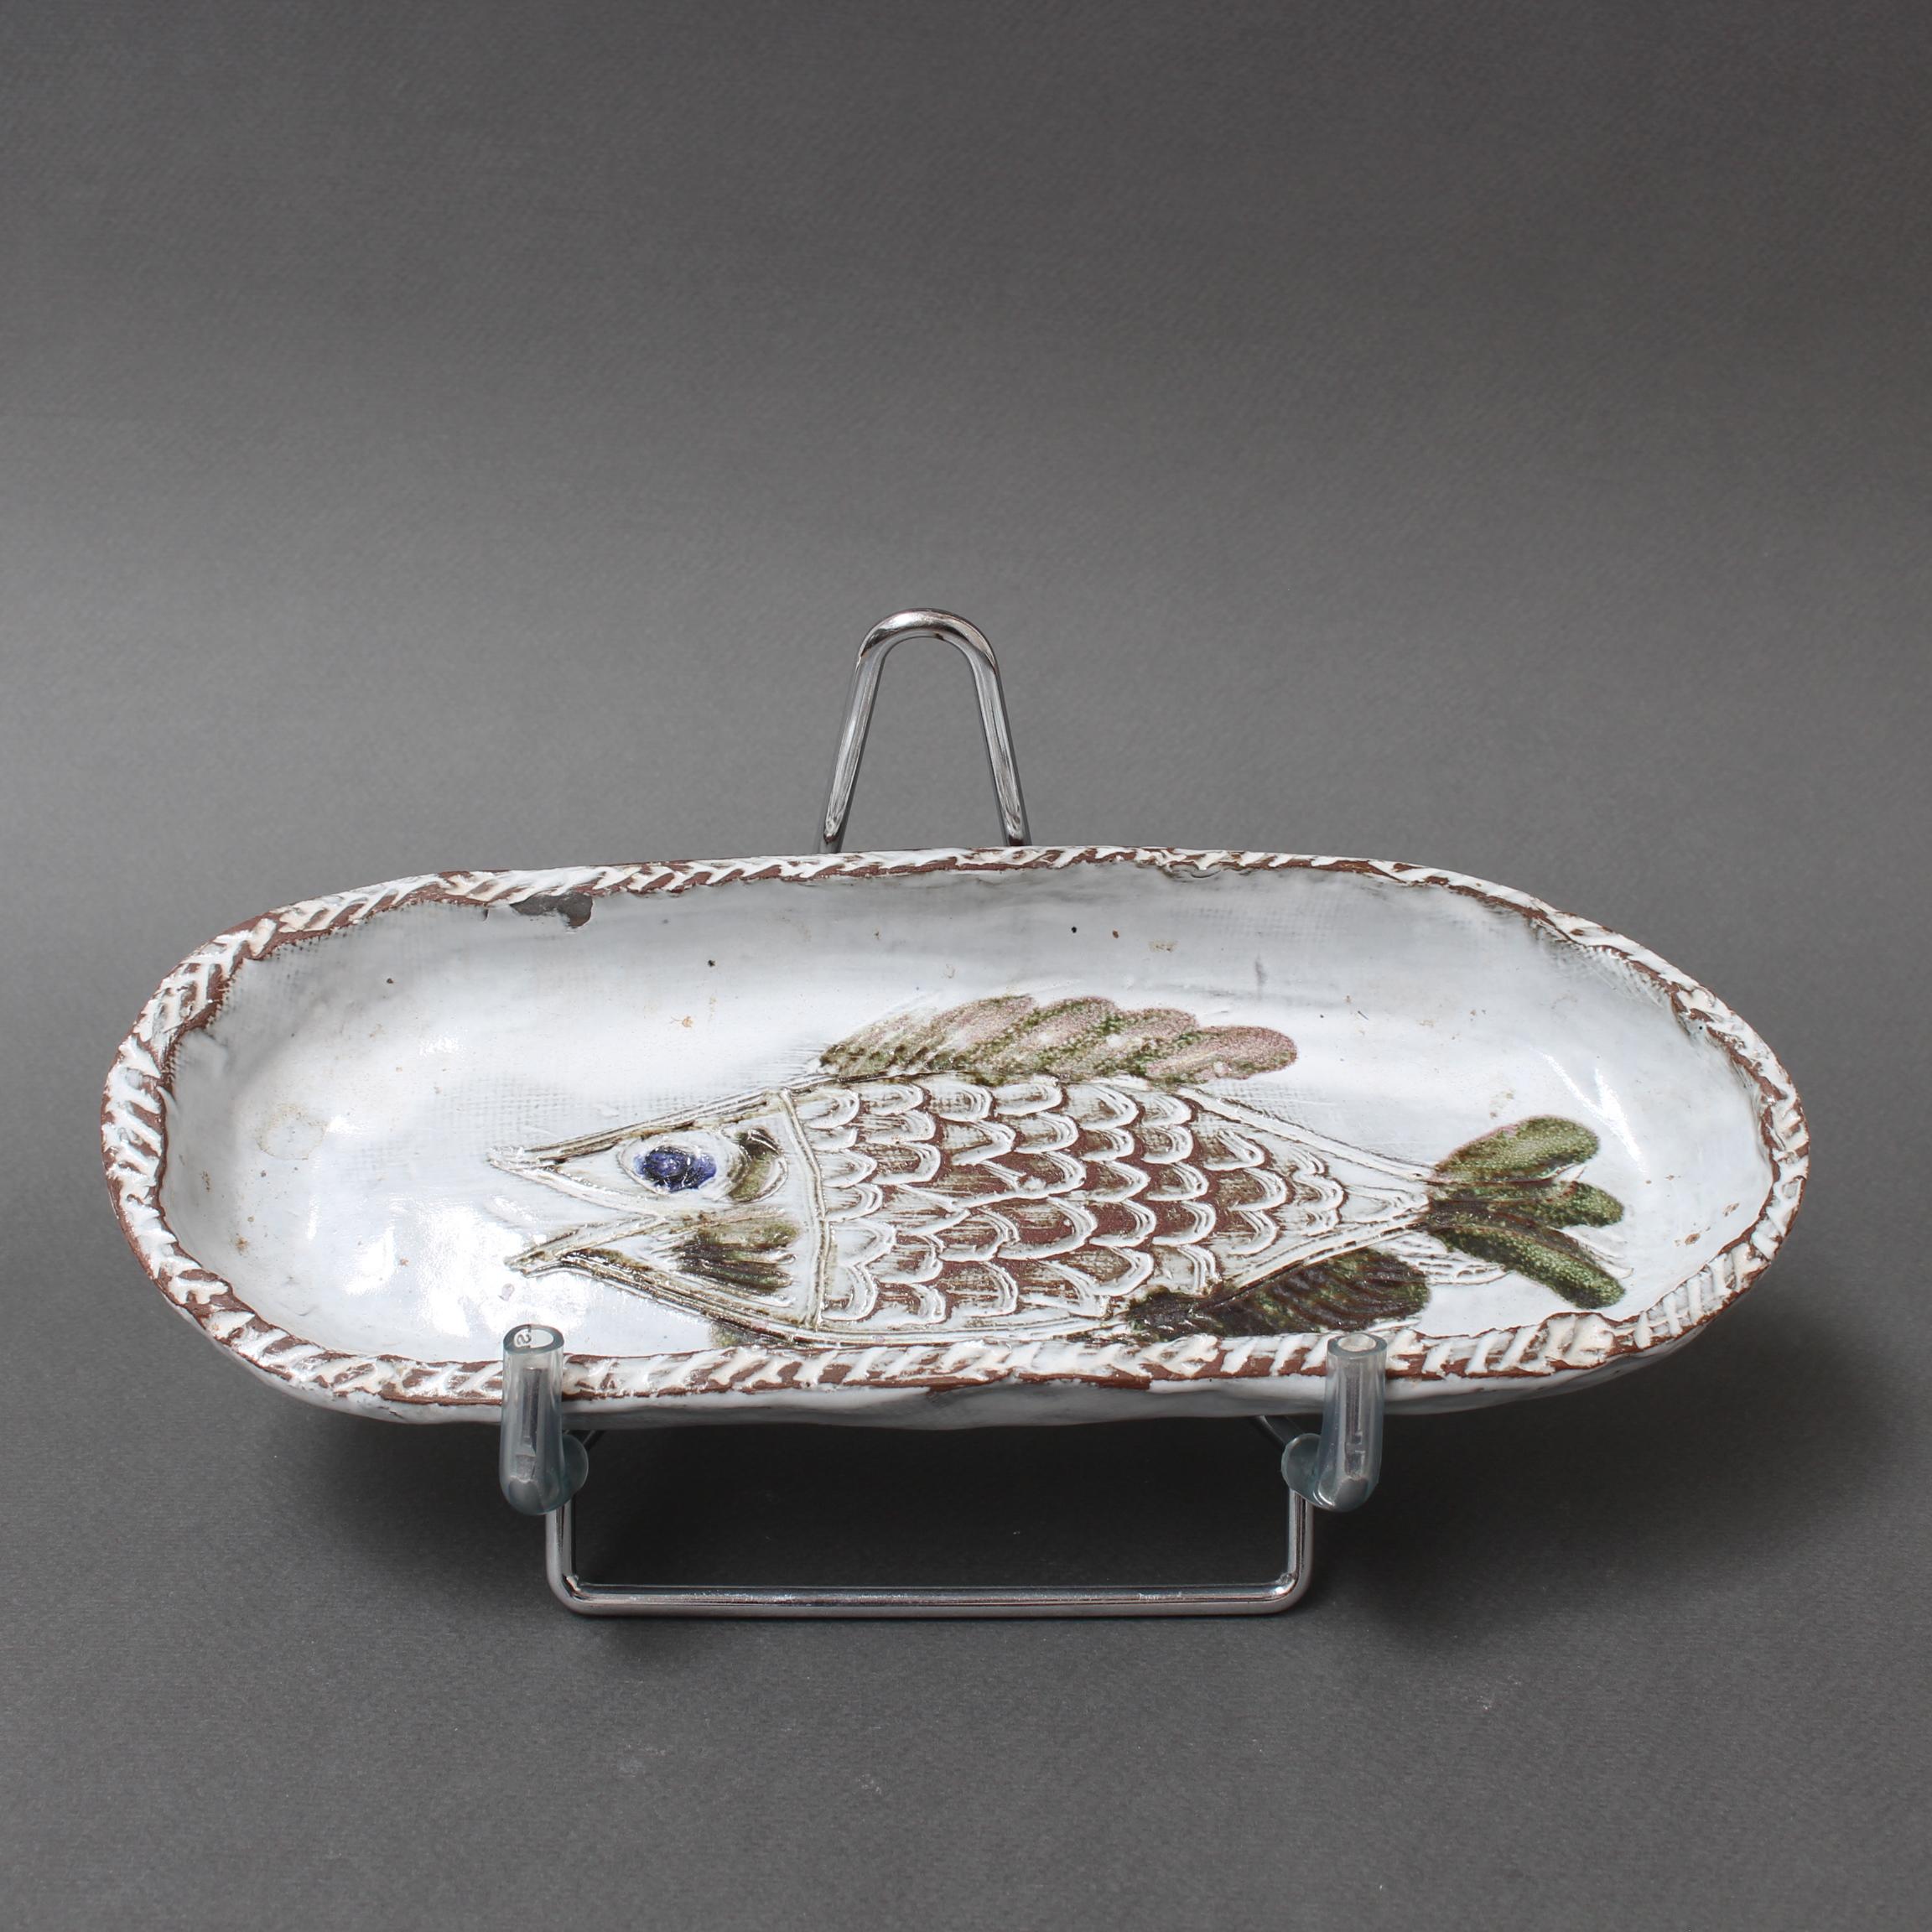 Plat décoratif en céramique française à motif de poisson (circa 1970) par Albert Thiry. Un plat en céramique de forme ovale présente une surface glacée blanche comme de la craie. Dans le creux du plat, un poisson est incisé dans la glaçure et peint